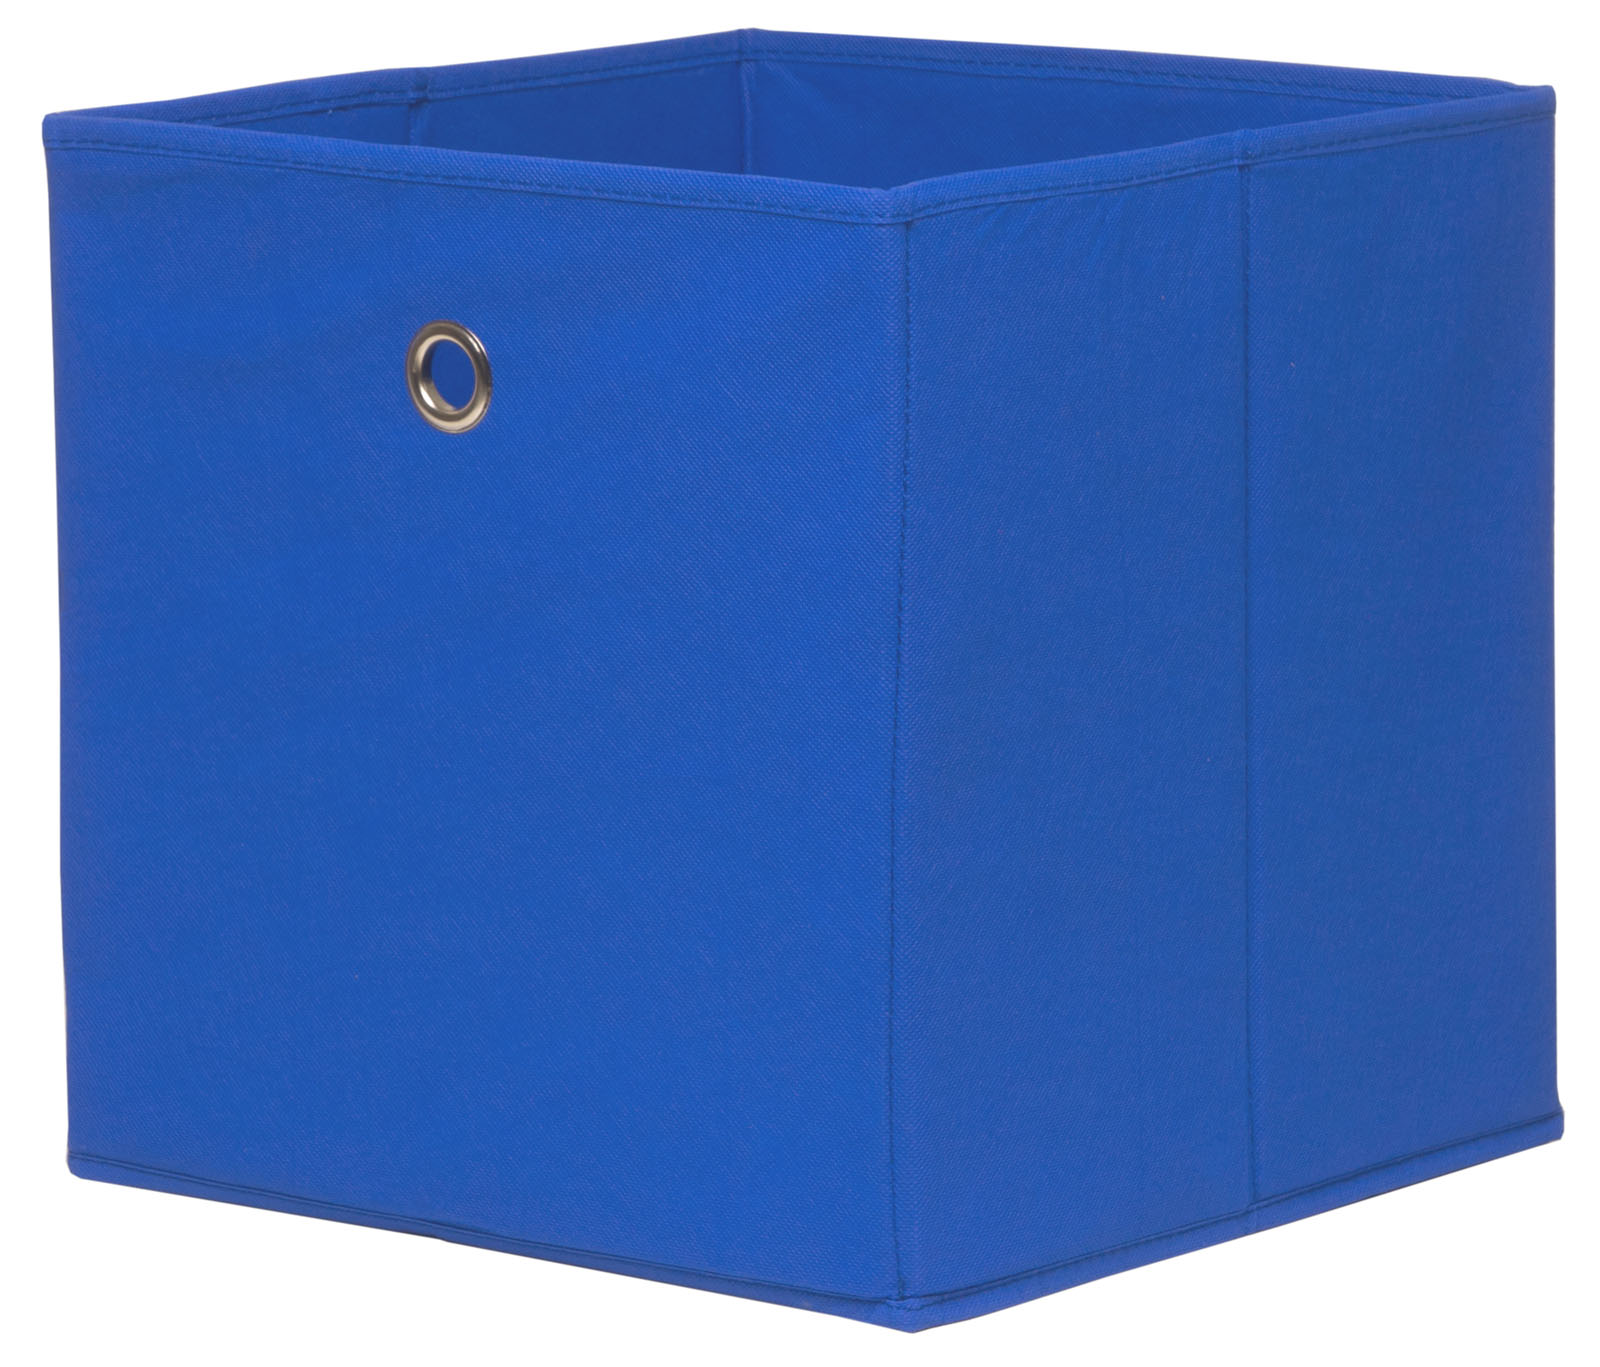 Úložný box v modré barvě skladem